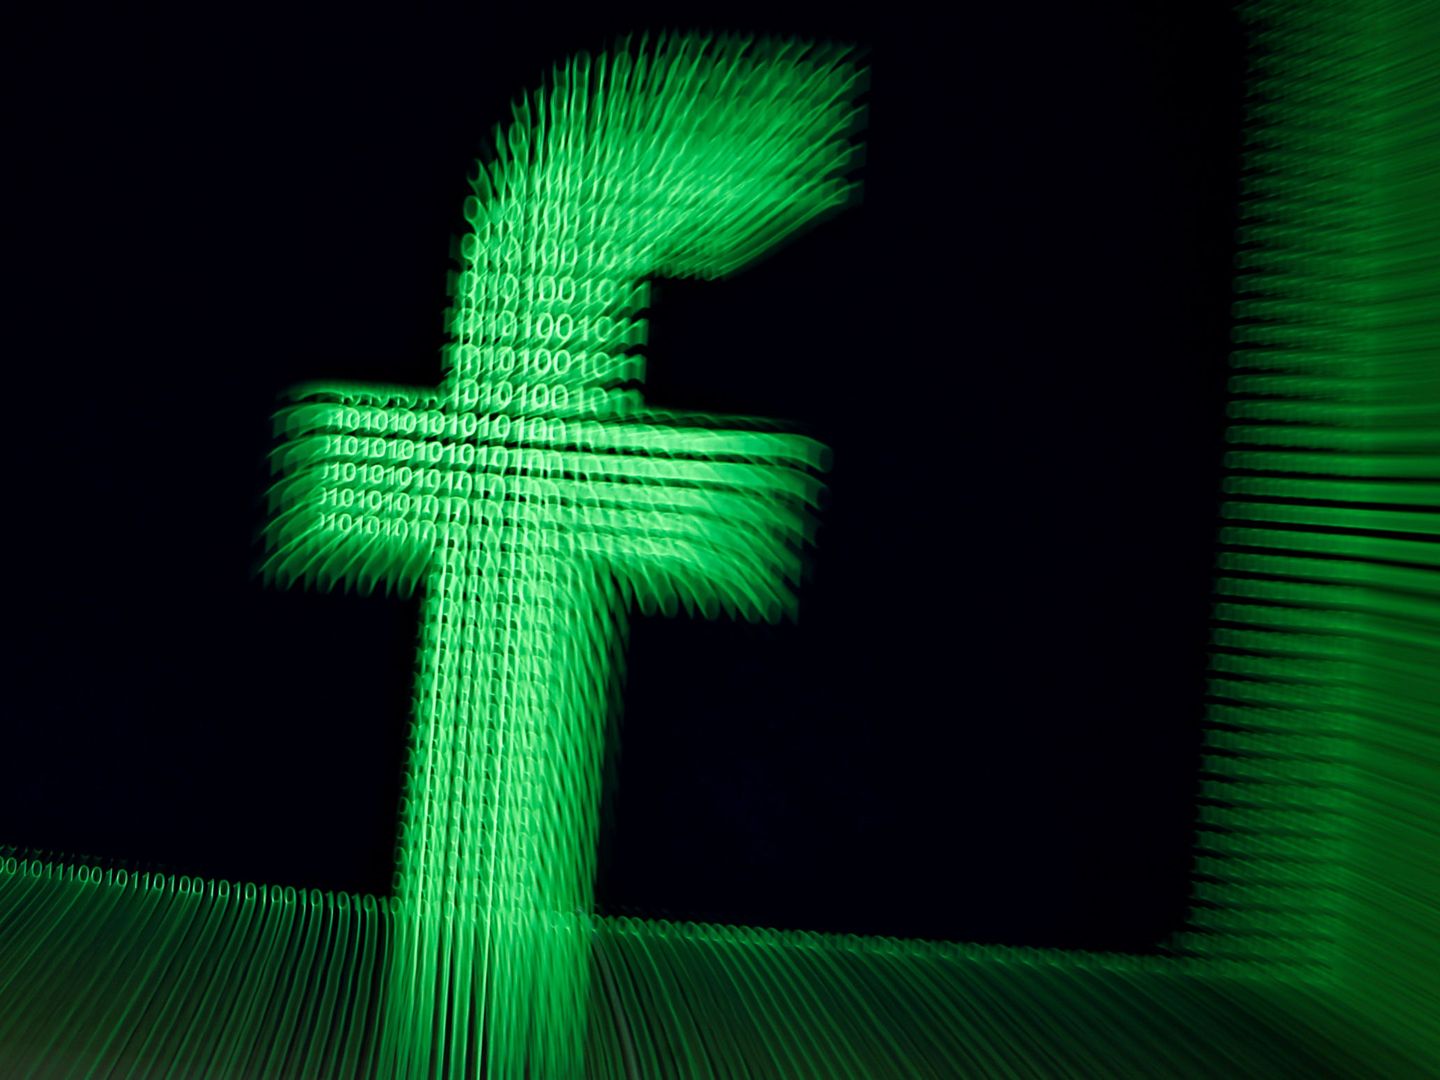 Un logo de Facebook en dígitos binarios. (Reuters)